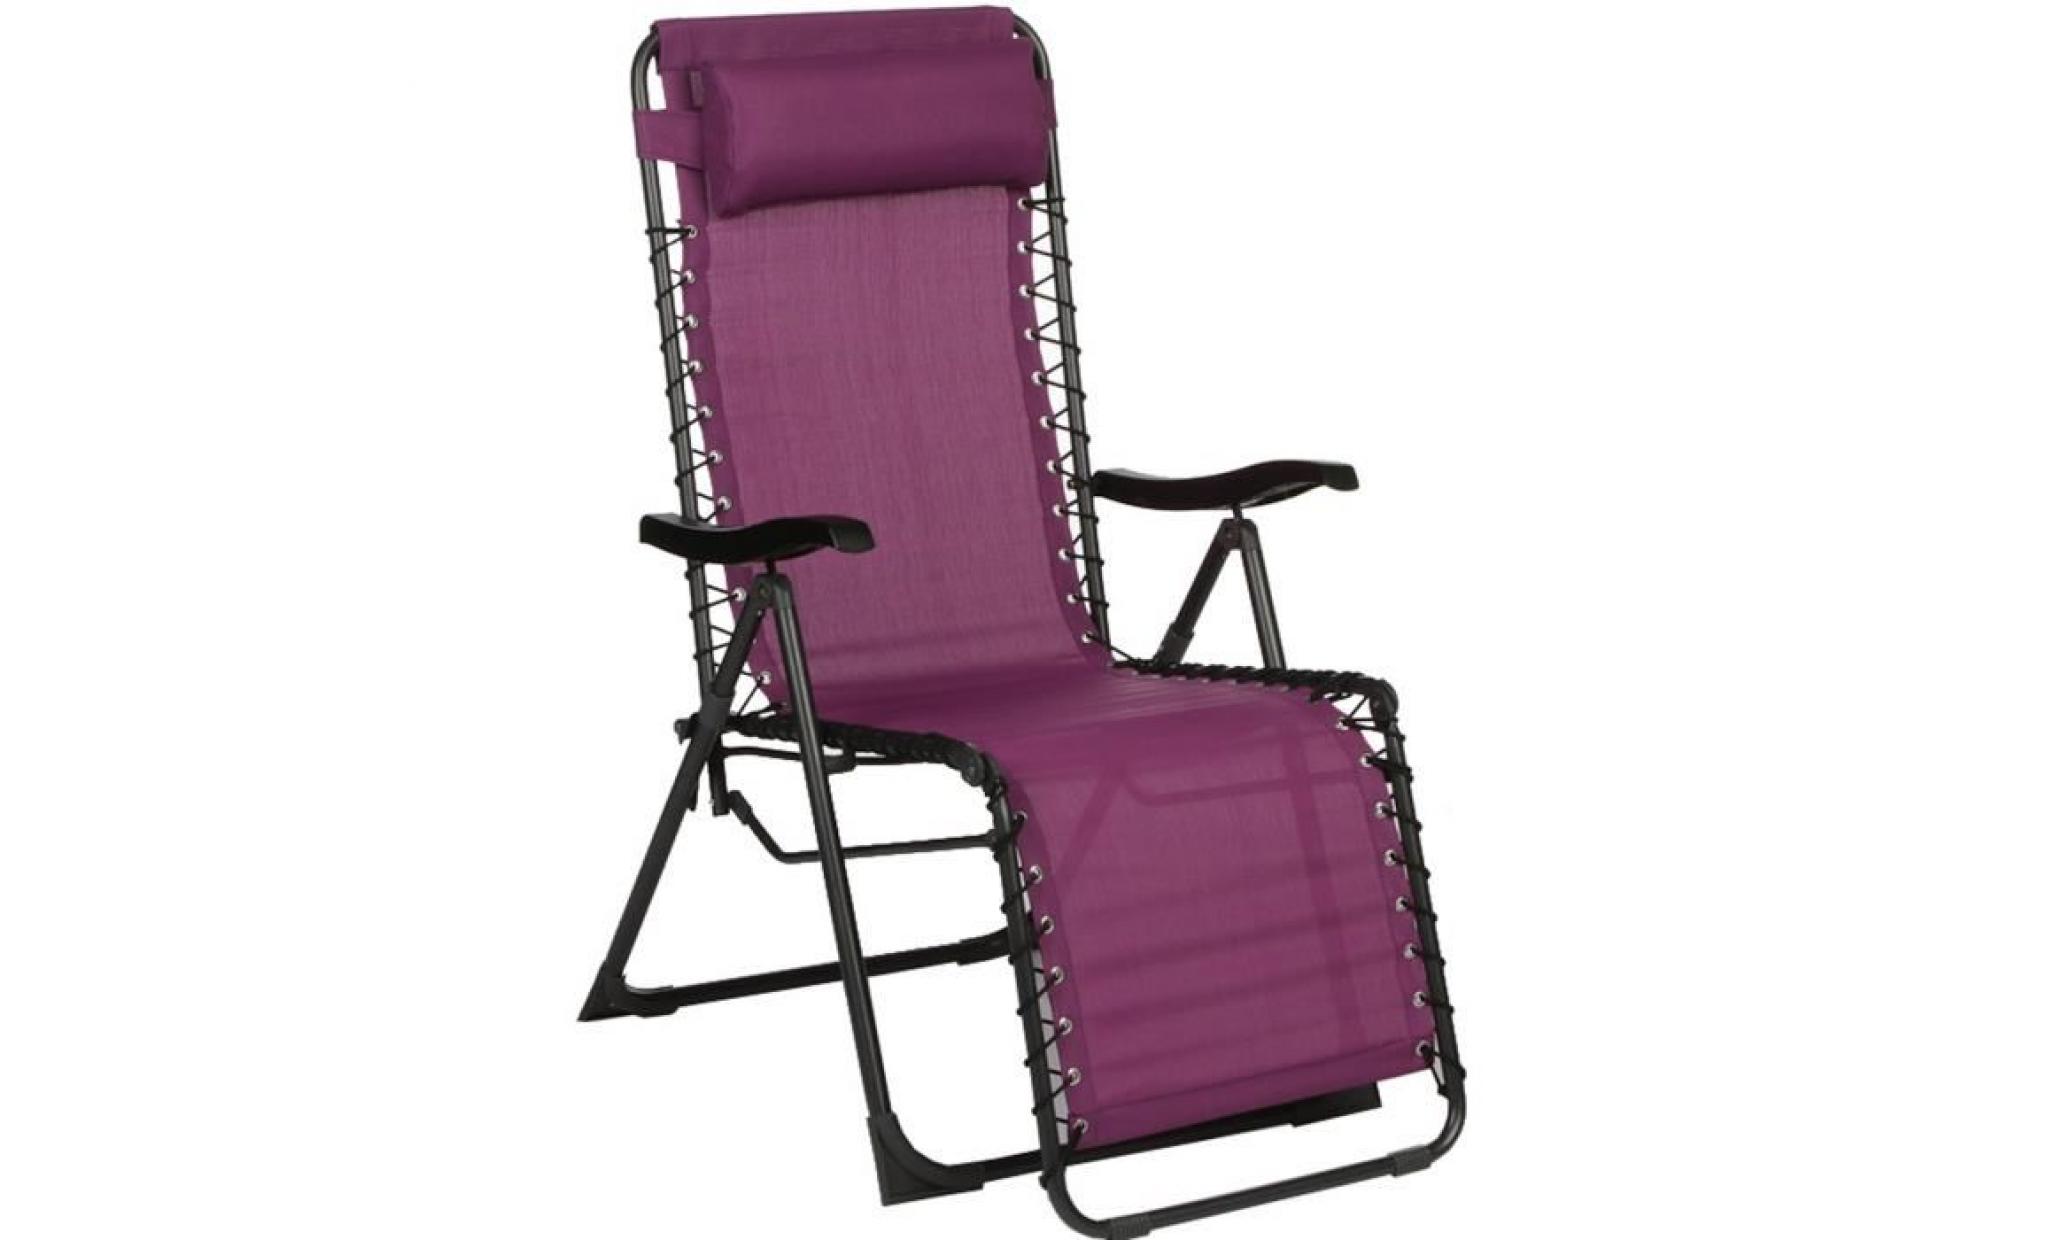 fauteuil de relaxation coloris prune en texaline et acier   dim : l 93 x p 64 x h 110 cm